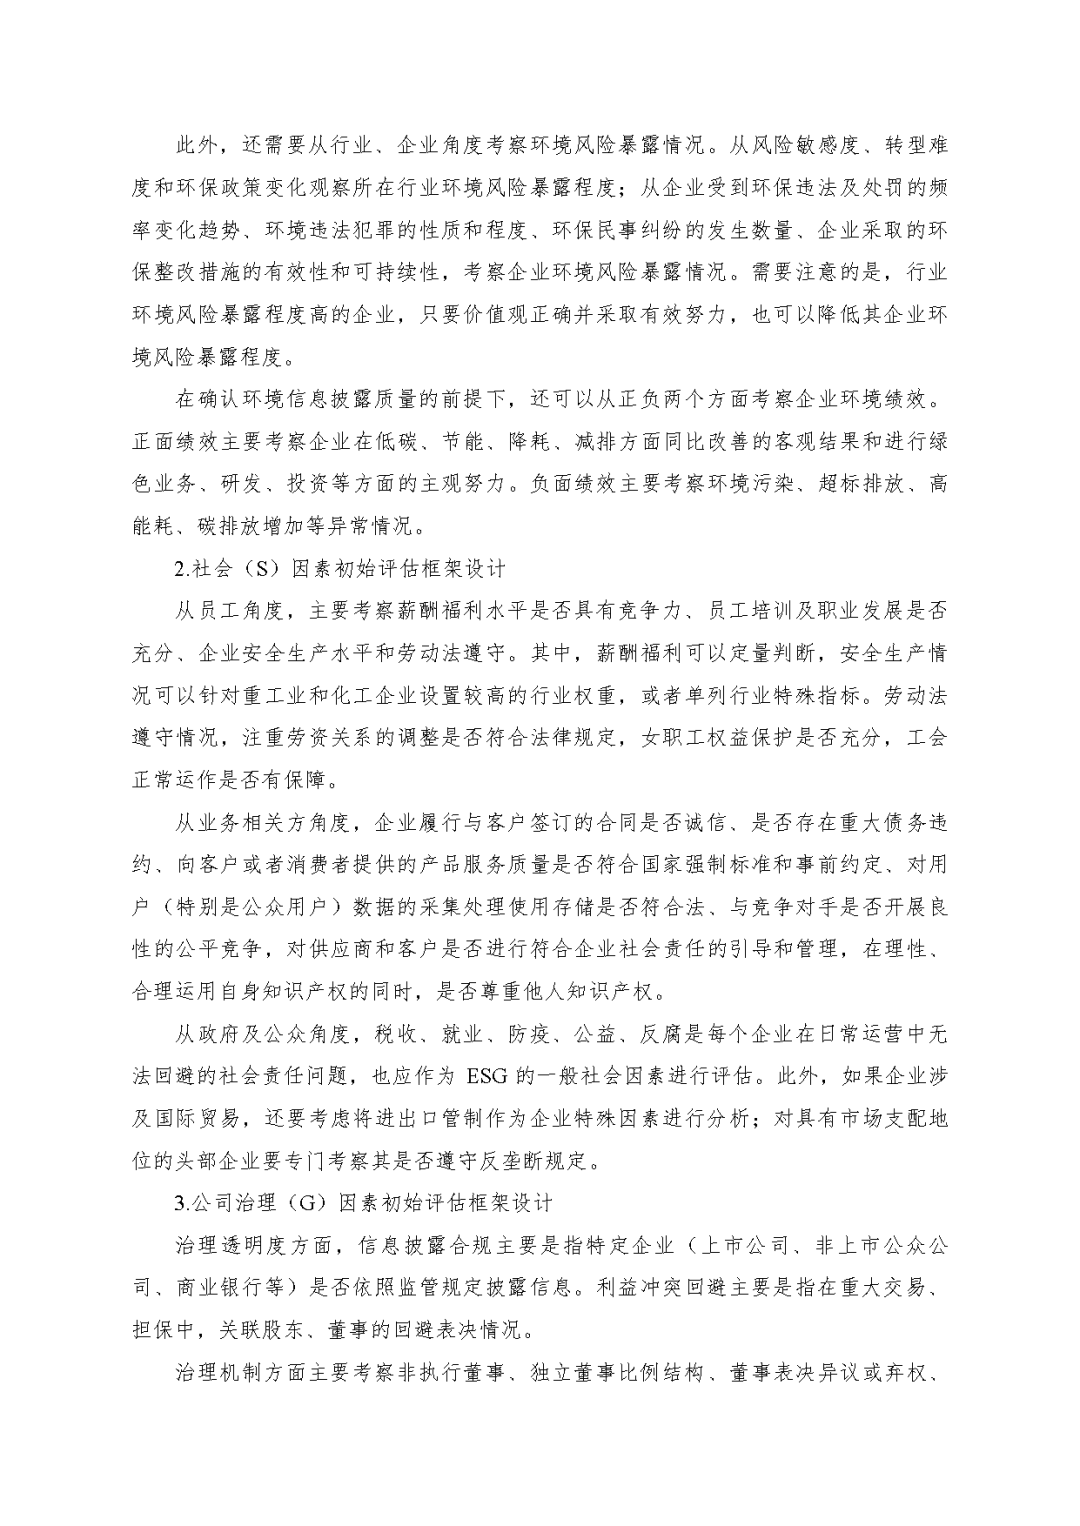 尊龙凯时ag旗舰厅官网评估於隽蓉、蒋骁等在《中国资产评估》揭晓专业文章《ESG因素对市场法修正影响的初探》